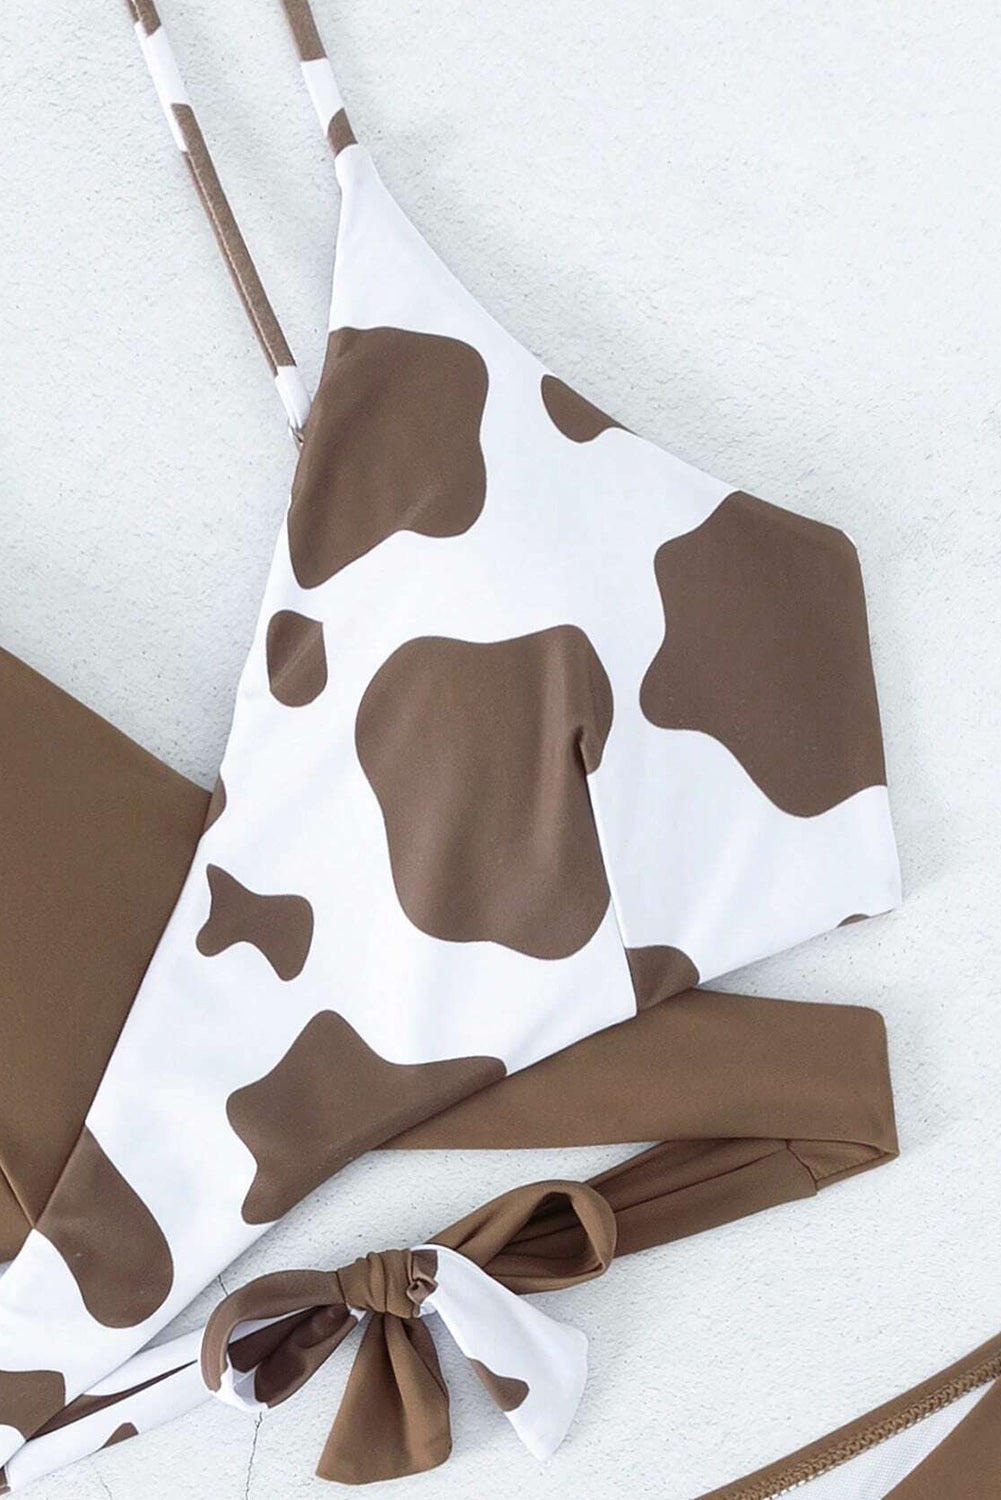 Kavni kontrastni bikini s kravjim vzorcem